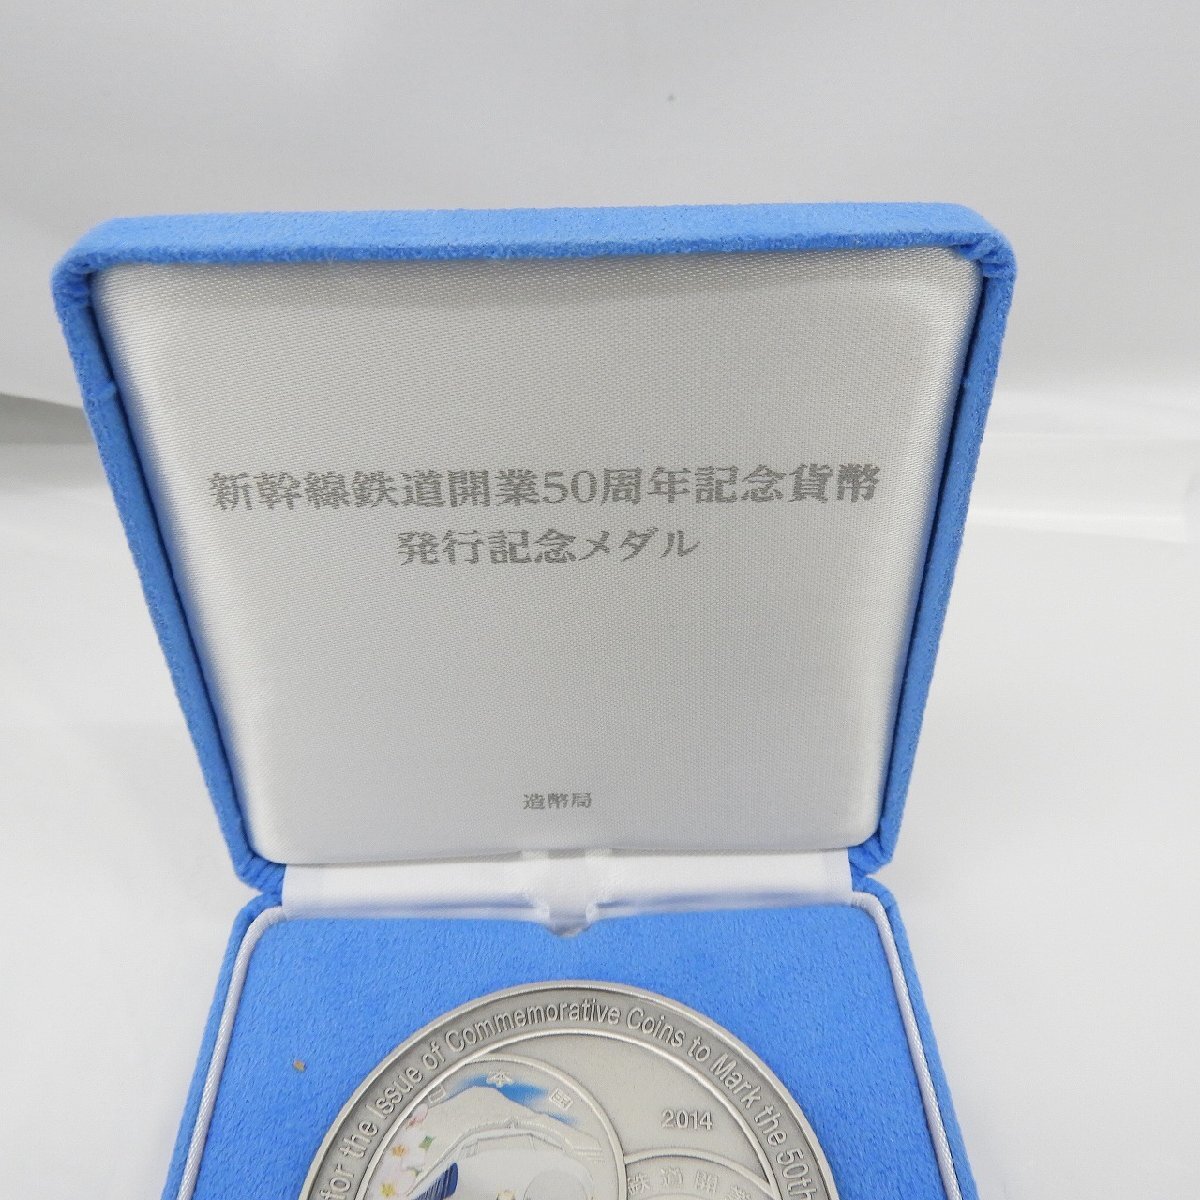 【記念メダル】新幹線鉄道開業50周年記念貨幣発行記念メダル 165.4g 箱付 807117328 0413の画像6